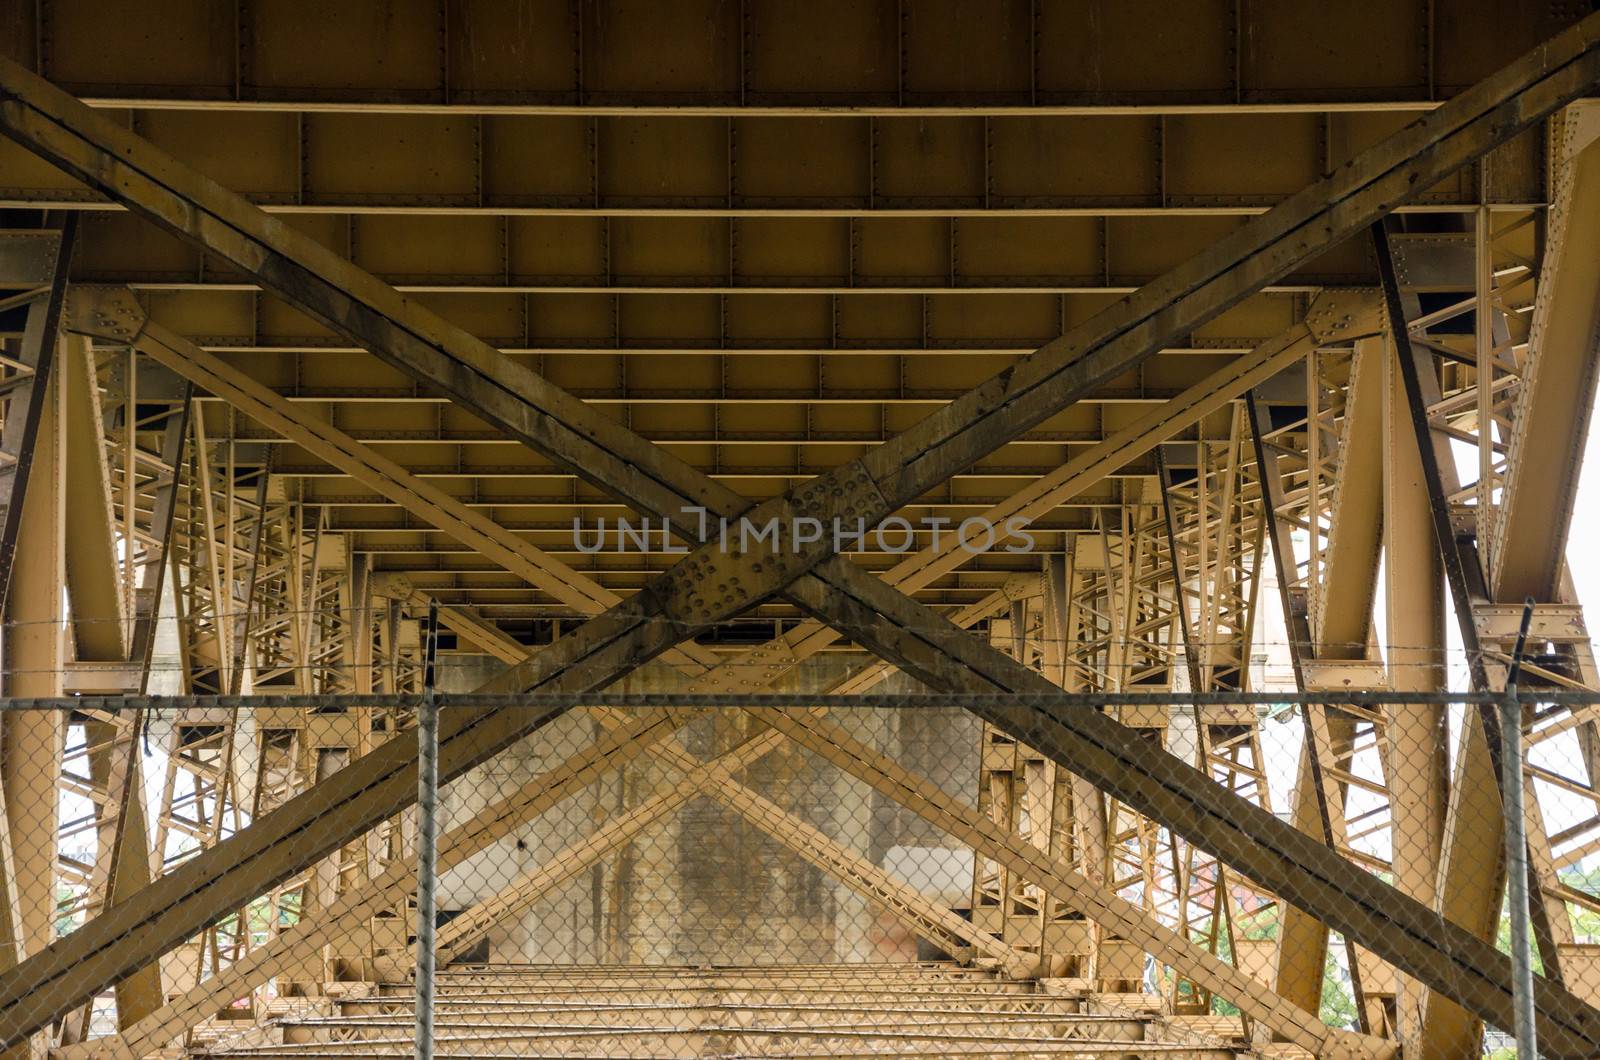 Below a Bridge by jkraft5